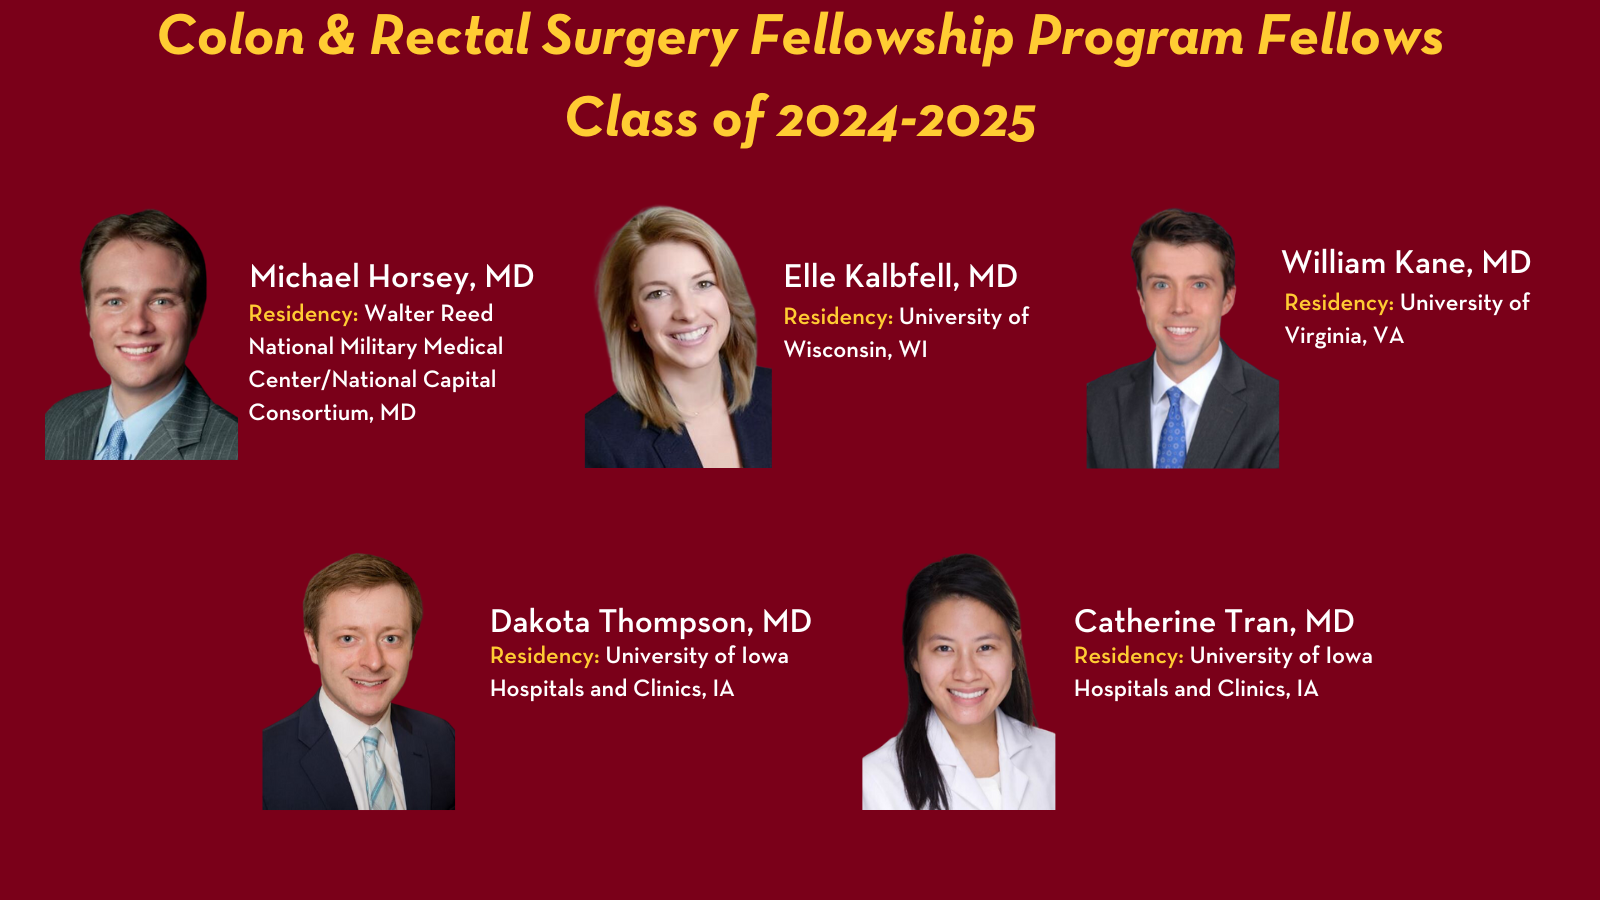 Colon & Rectal Surgery Fellows